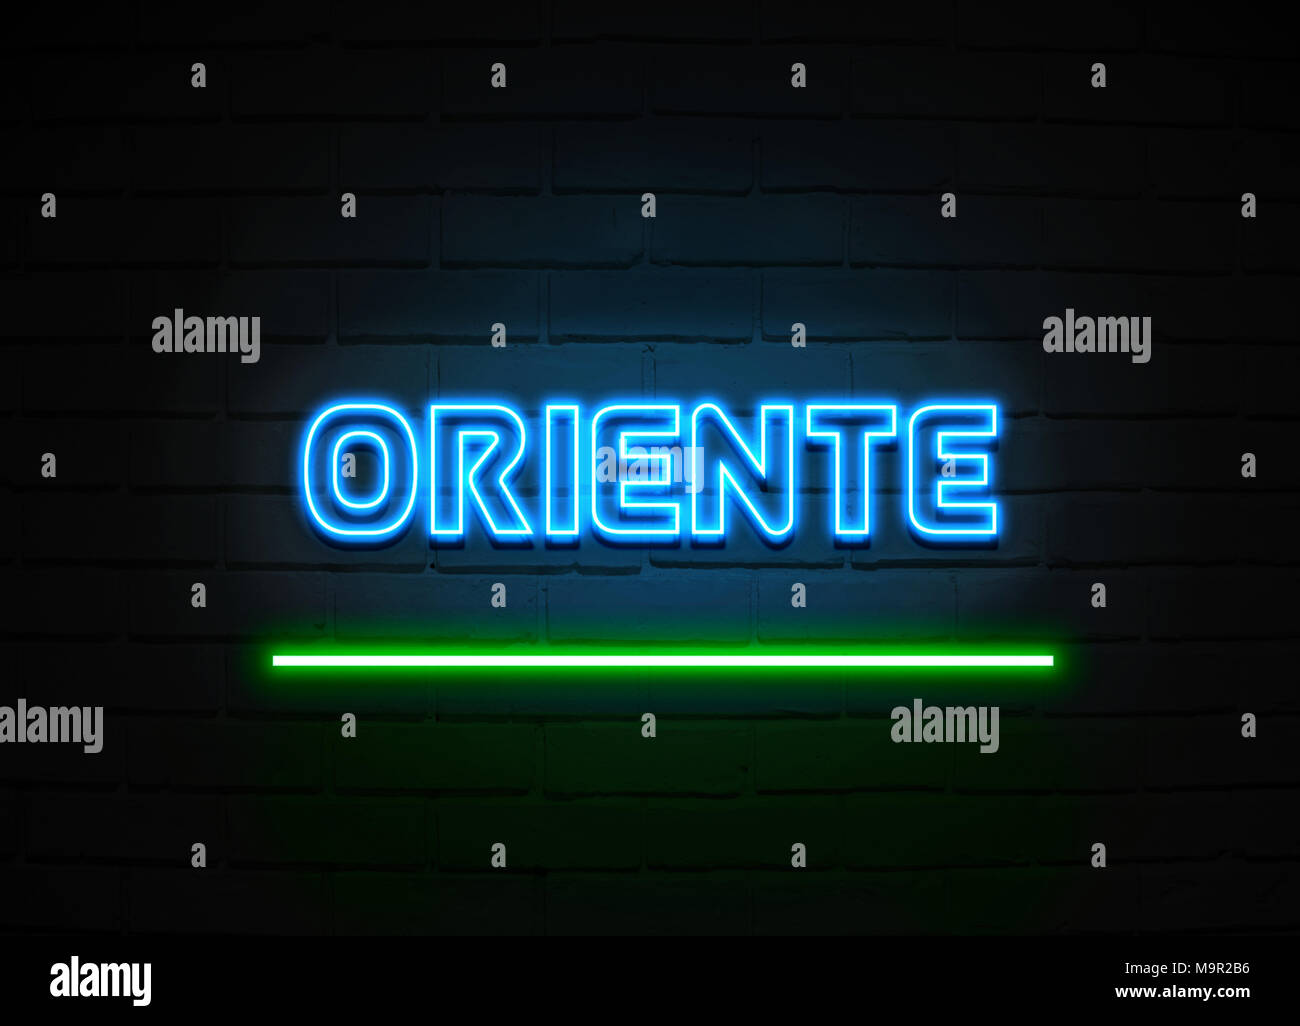 Oriente l'enseigne au néon - Glowing Neon Sign sur mur brickwall - rendu 3D illustration libres de droits. Banque D'Images